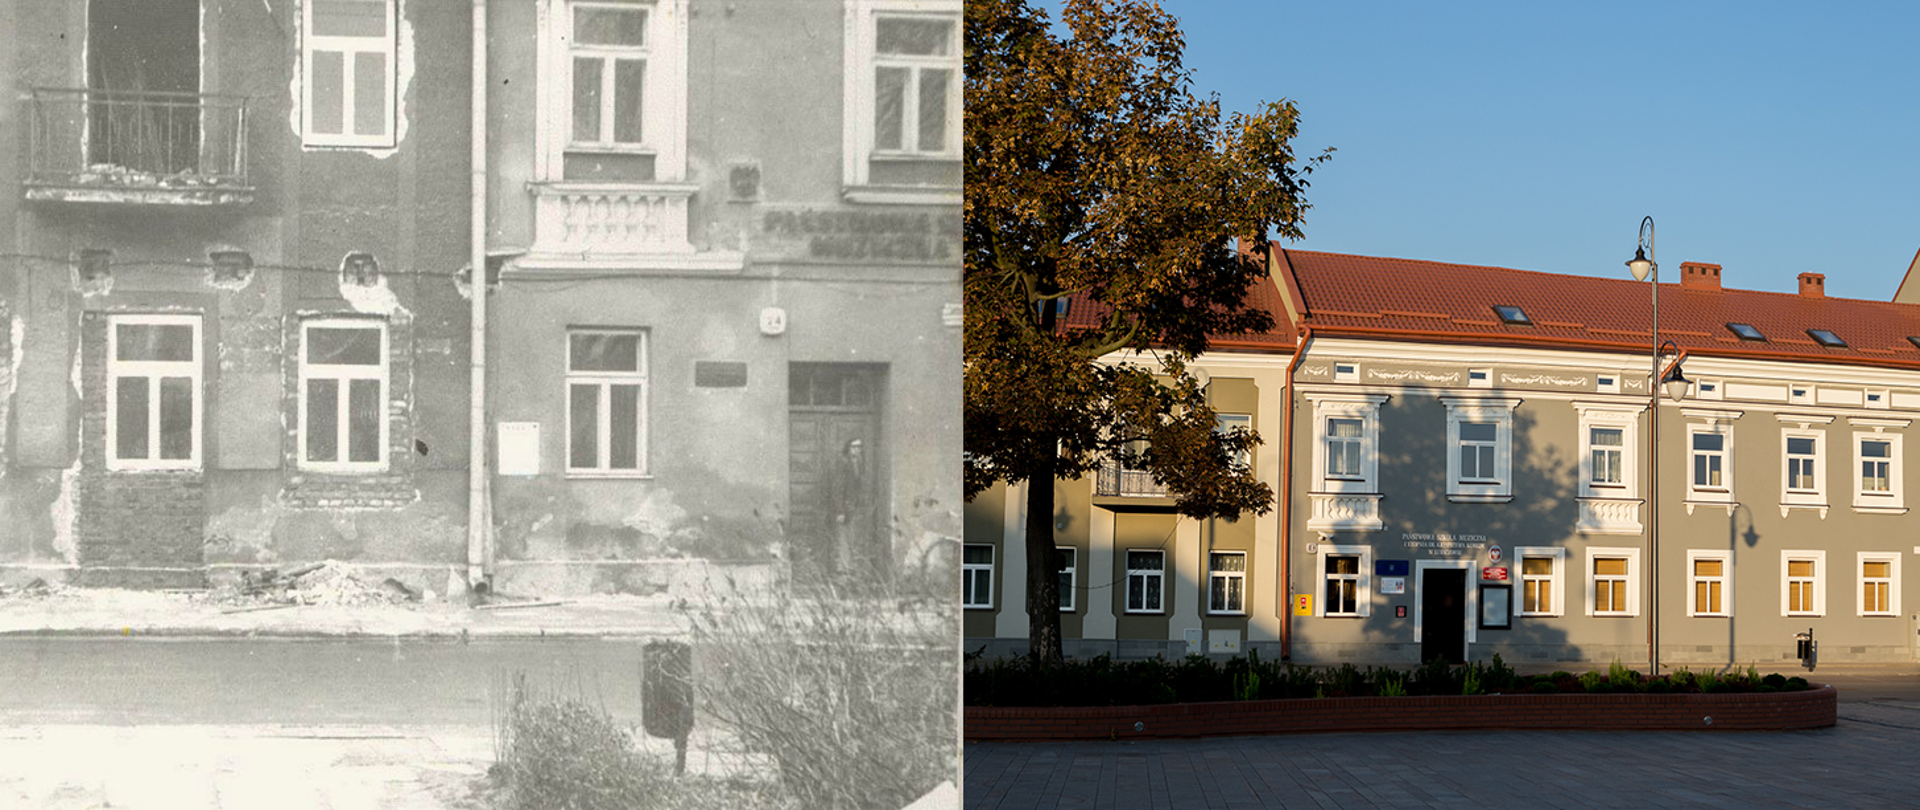 Zdjęcie przedstawiające budynek szkoły od ul. Rynek po lewej stronie w roku 1976 w trakcie remontu po prawej obecny wygląd szkoły